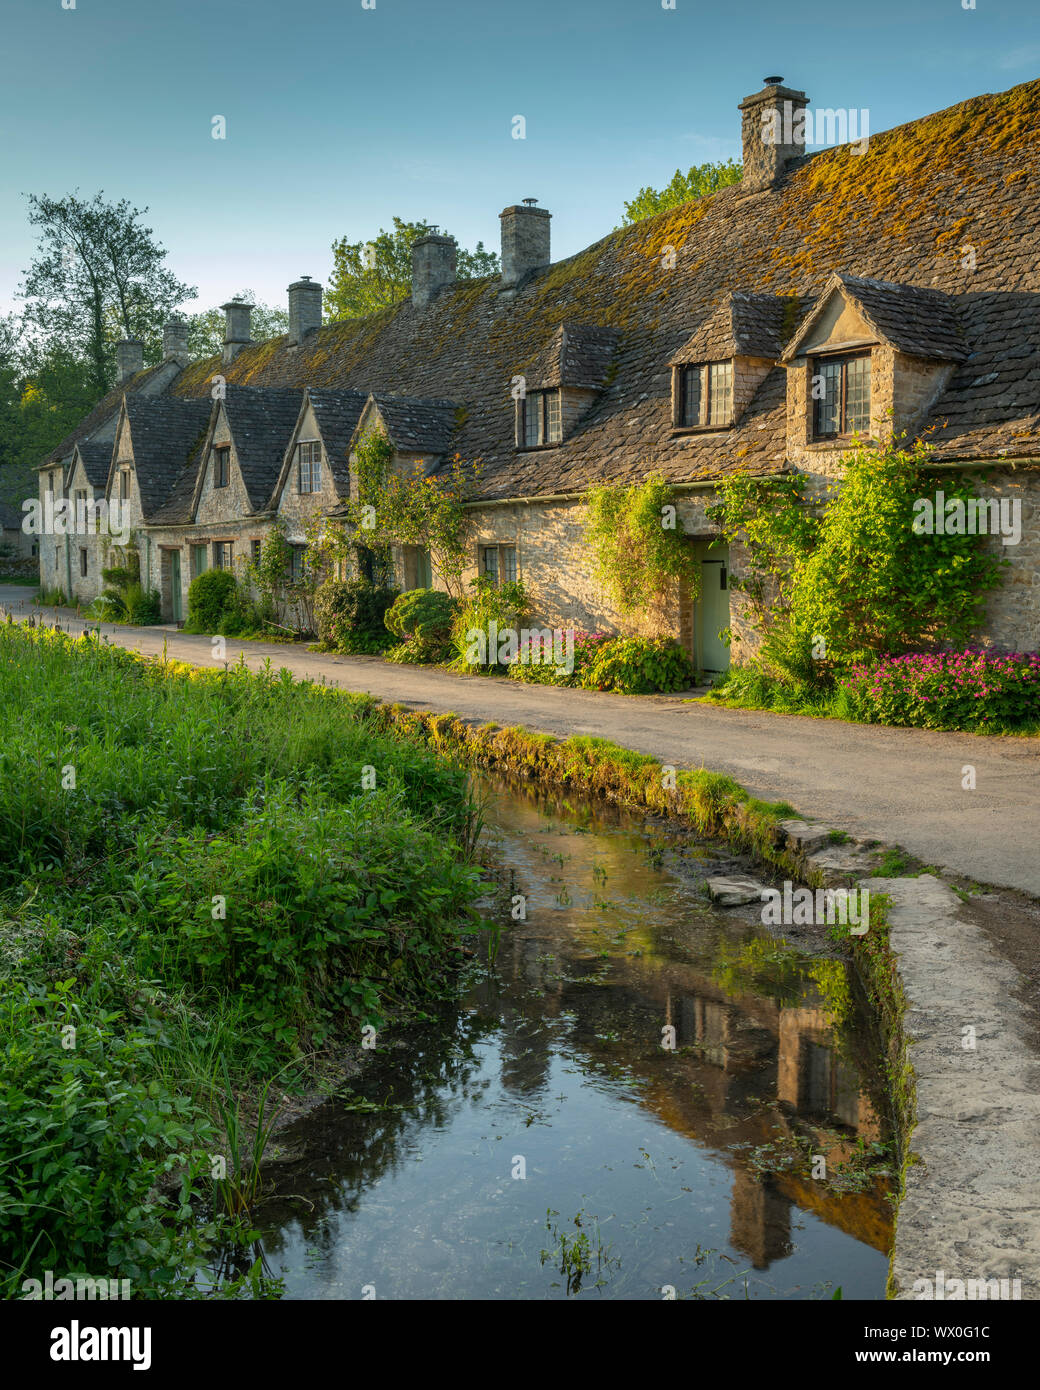 Arlington Row cottages dans le joli village de Cotswold Bibury, Gloucestershire, Angleterre, Royaume-Uni, Europe Banque D'Images